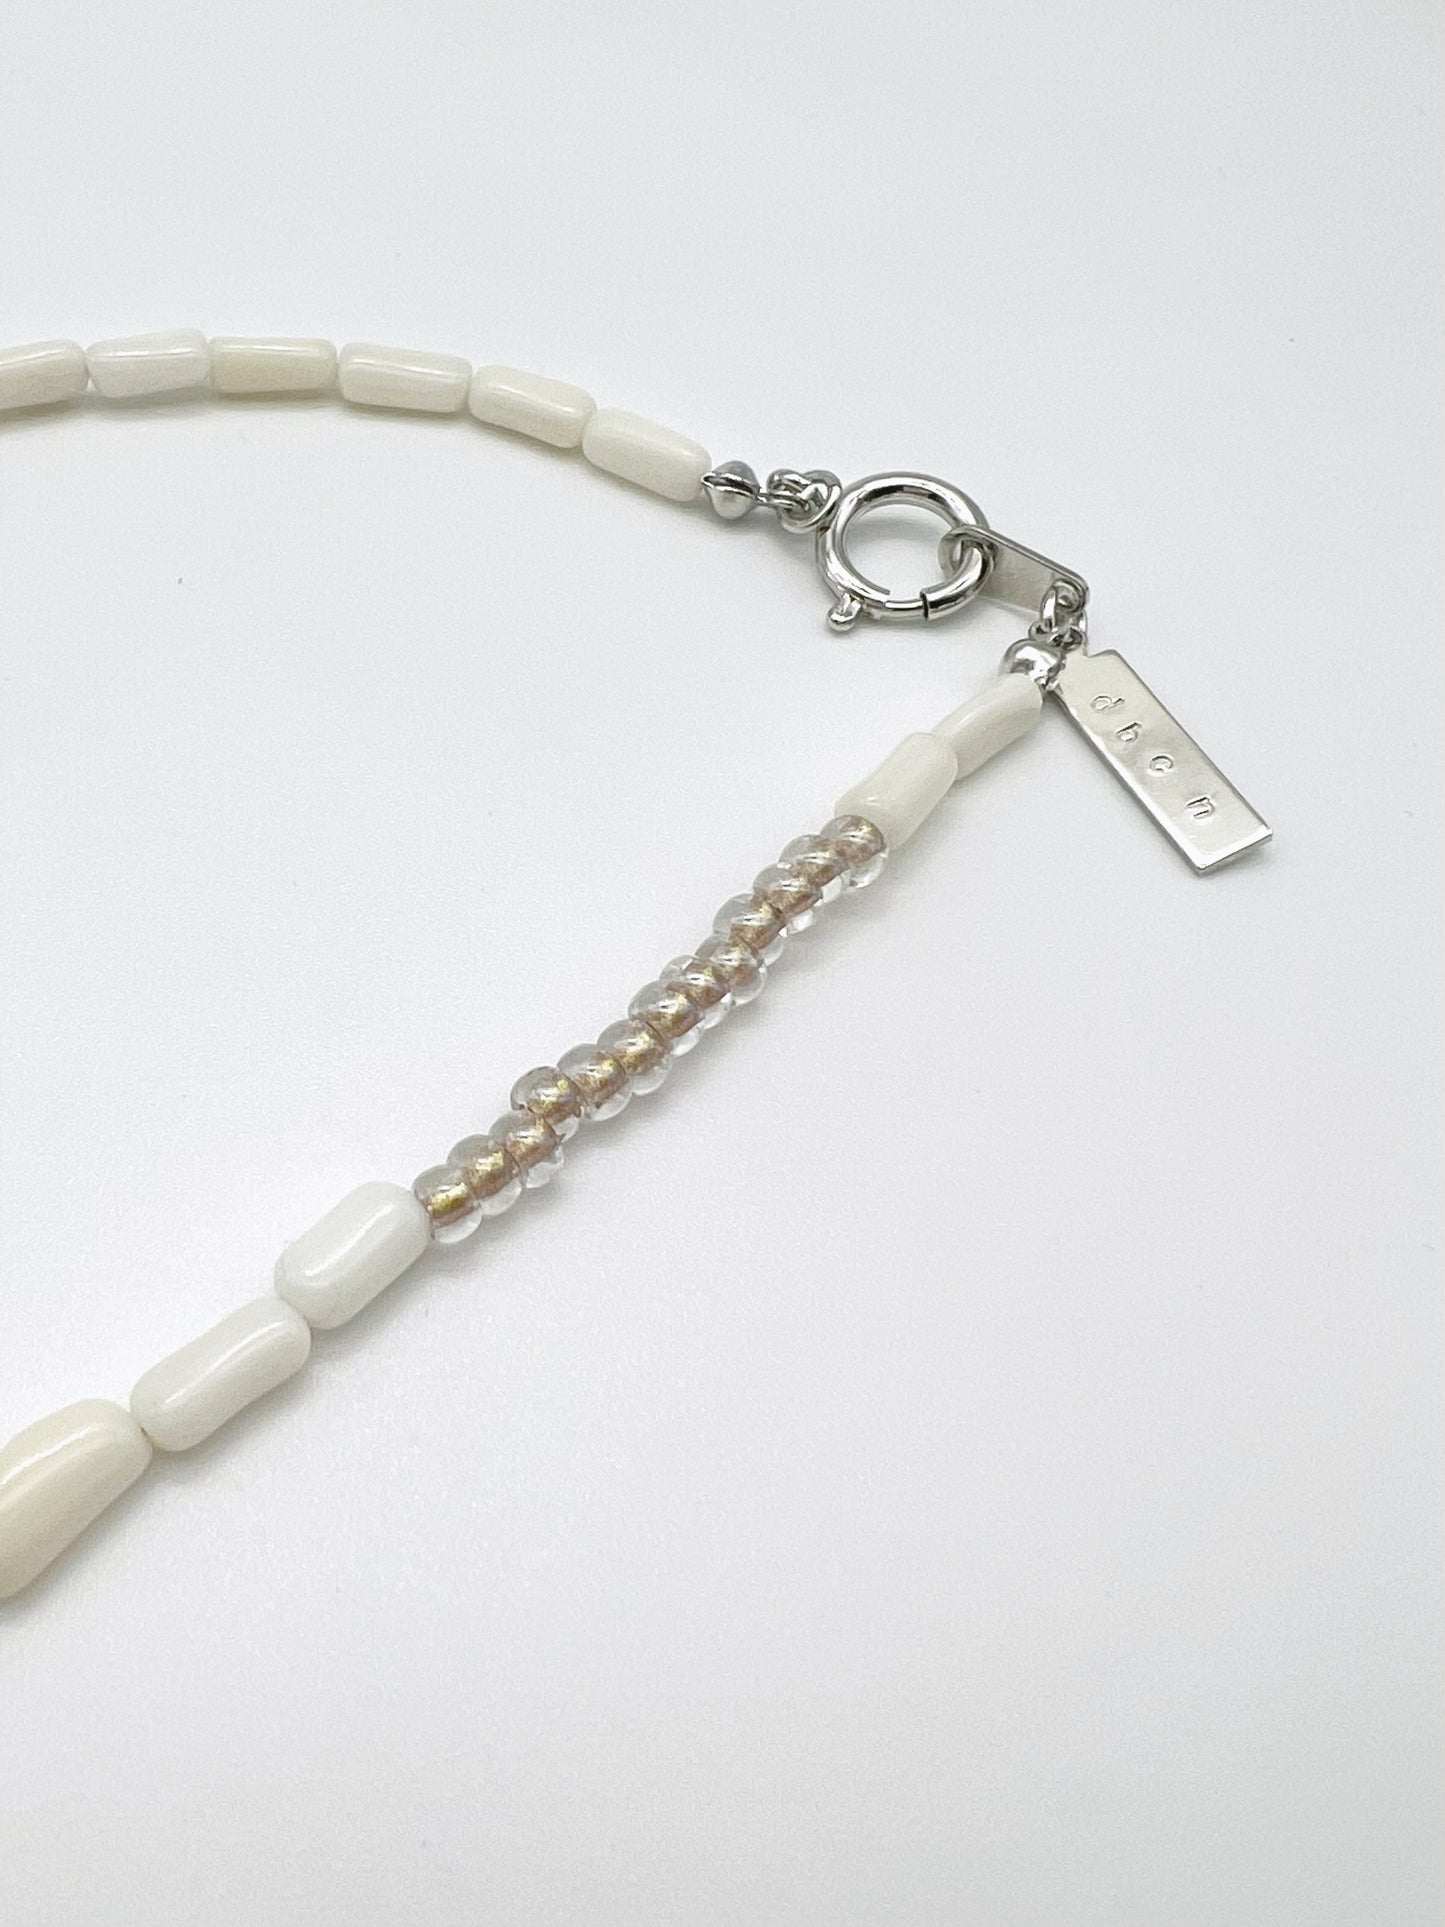 Coral motif necklace - WHT